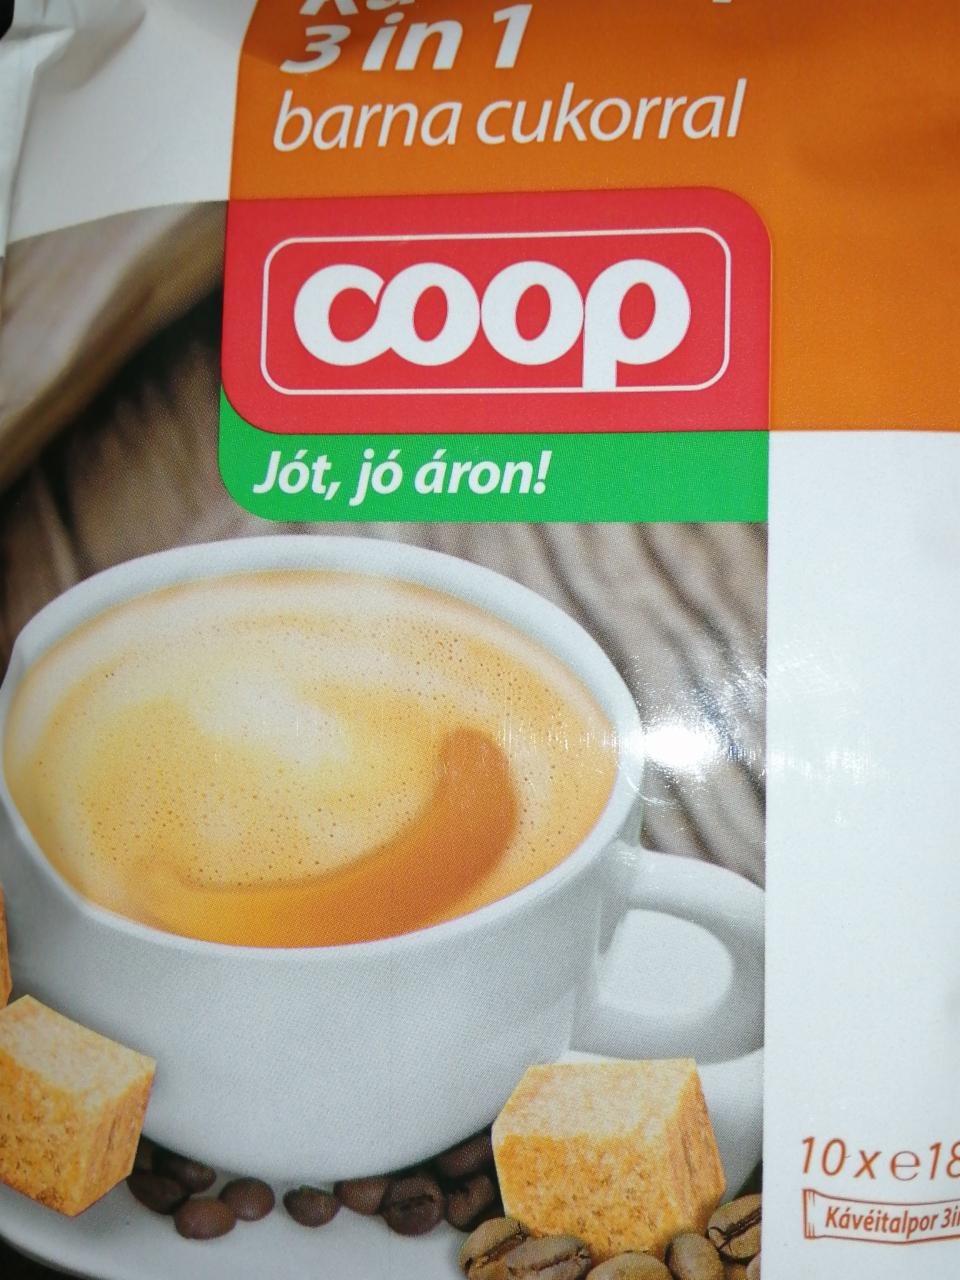 Képek - 3in1 kávé barna cukorral Coop